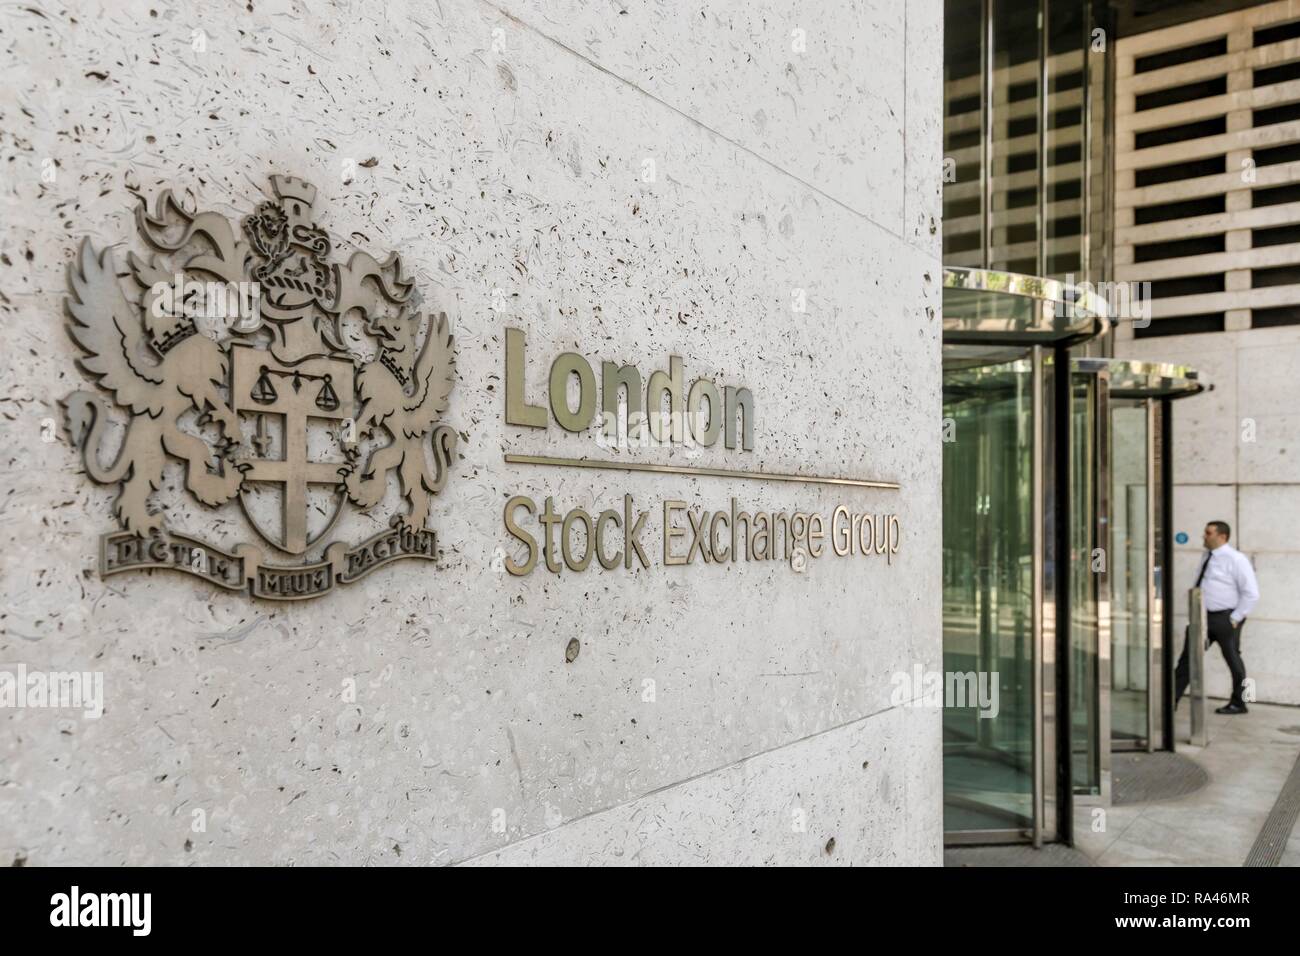 Logo de la London Stock Exchange Group, London Stock Exchange, du quartier financier, Londres, Royaume-Uni Banque D'Images